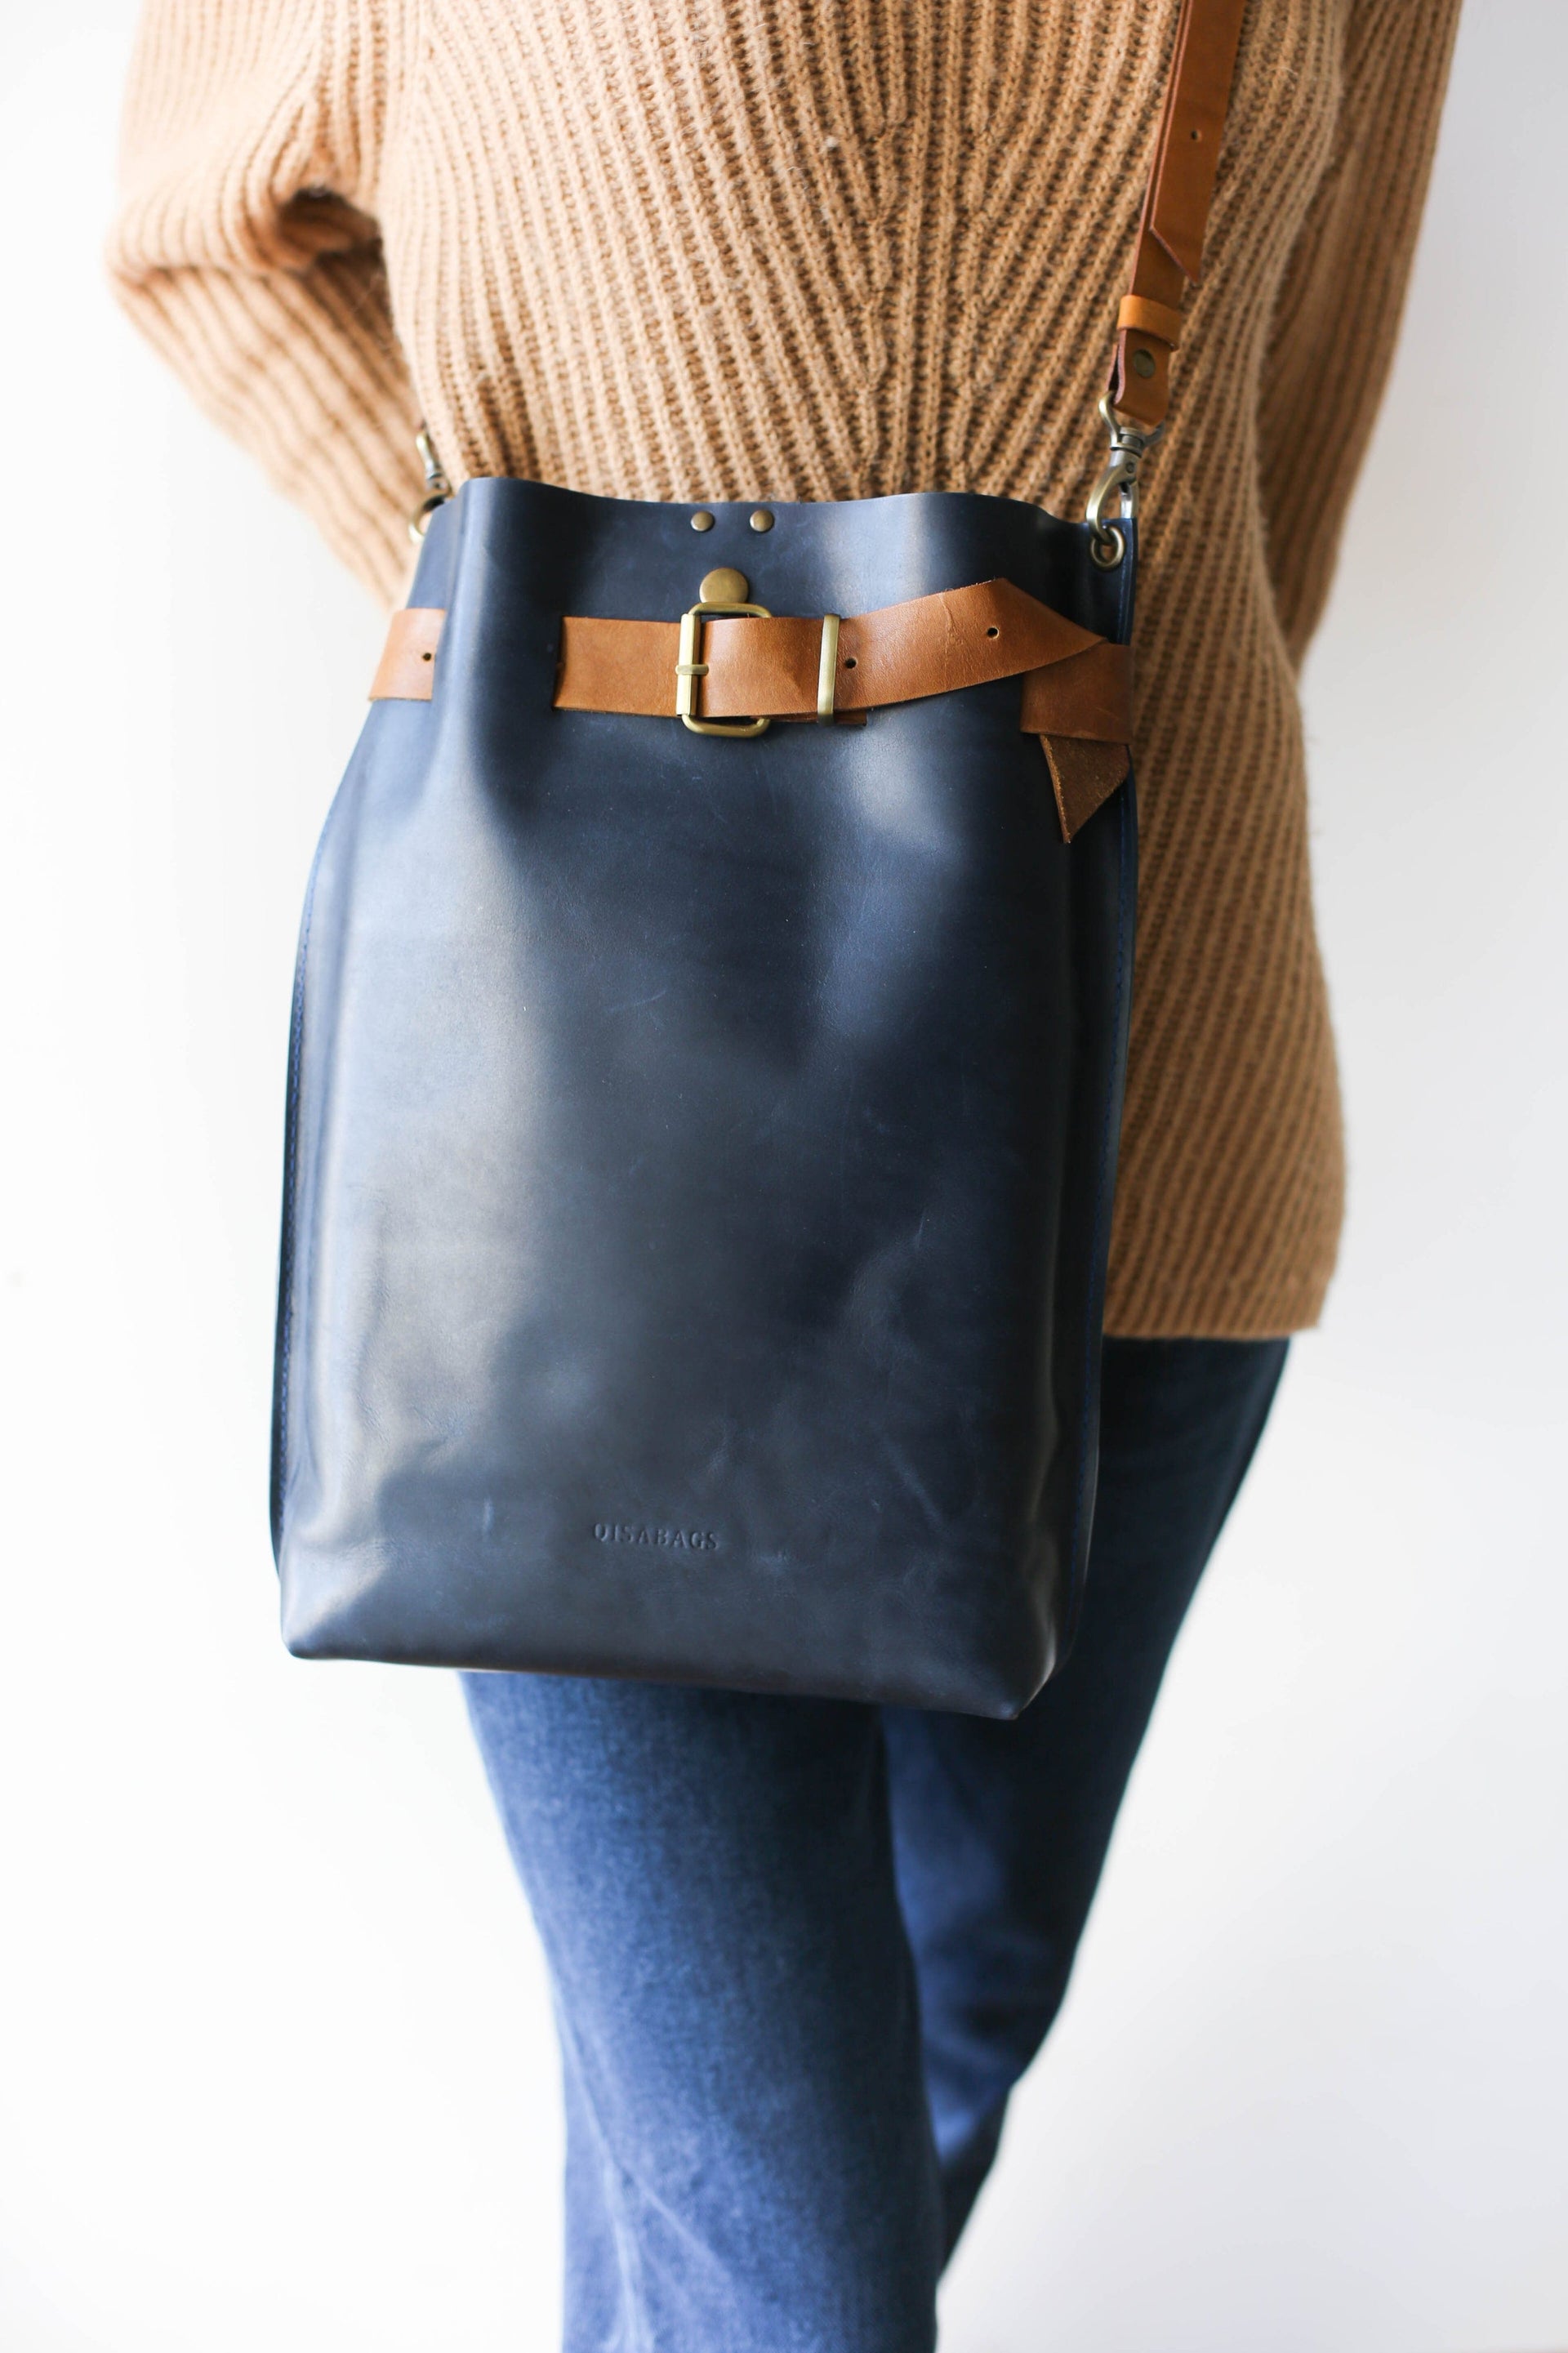 handmade leather cross body bag for women